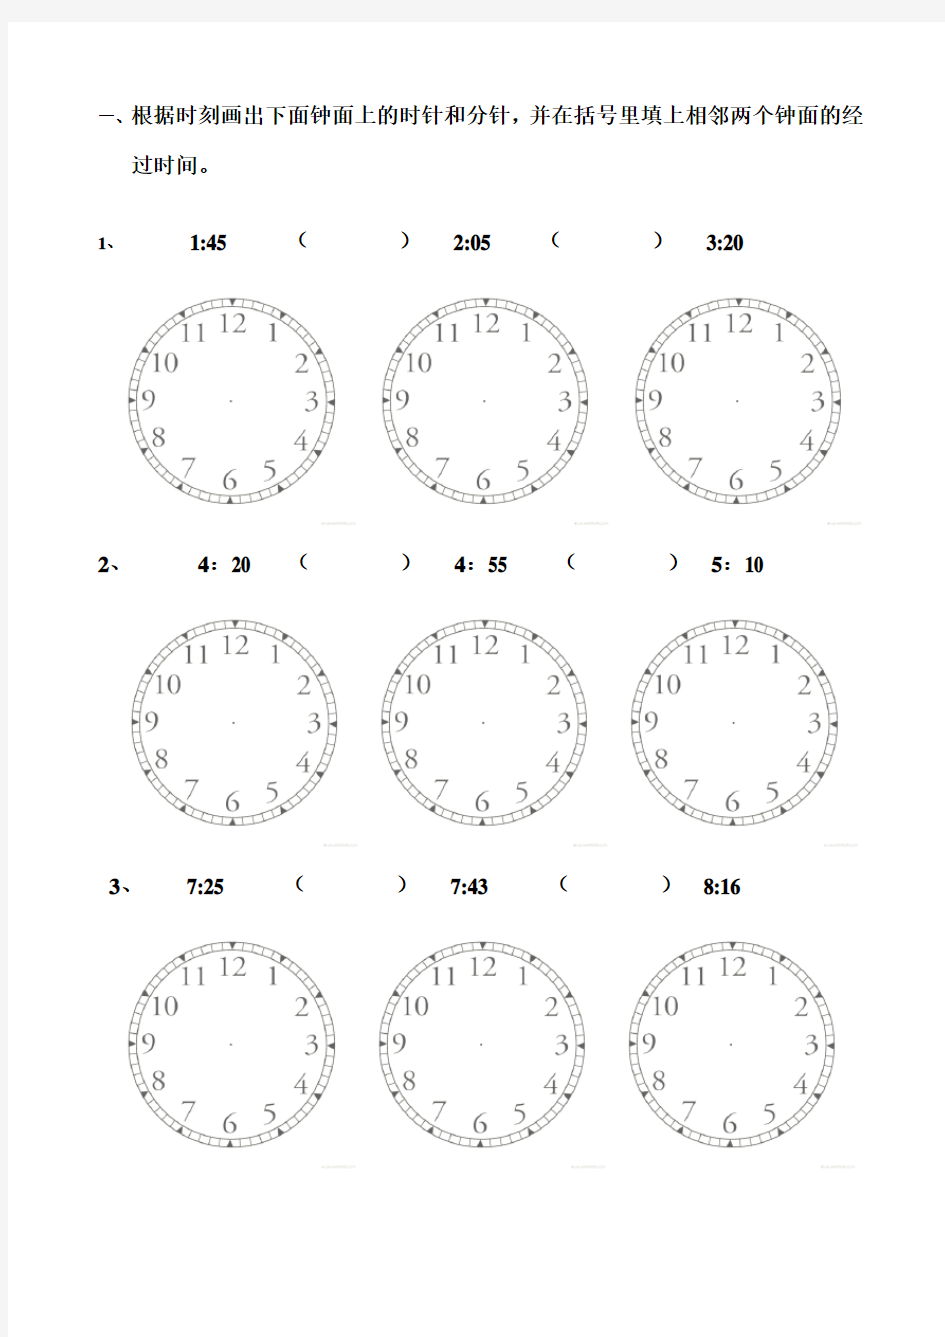 钟面(画时针和分针,并计算经过时间)